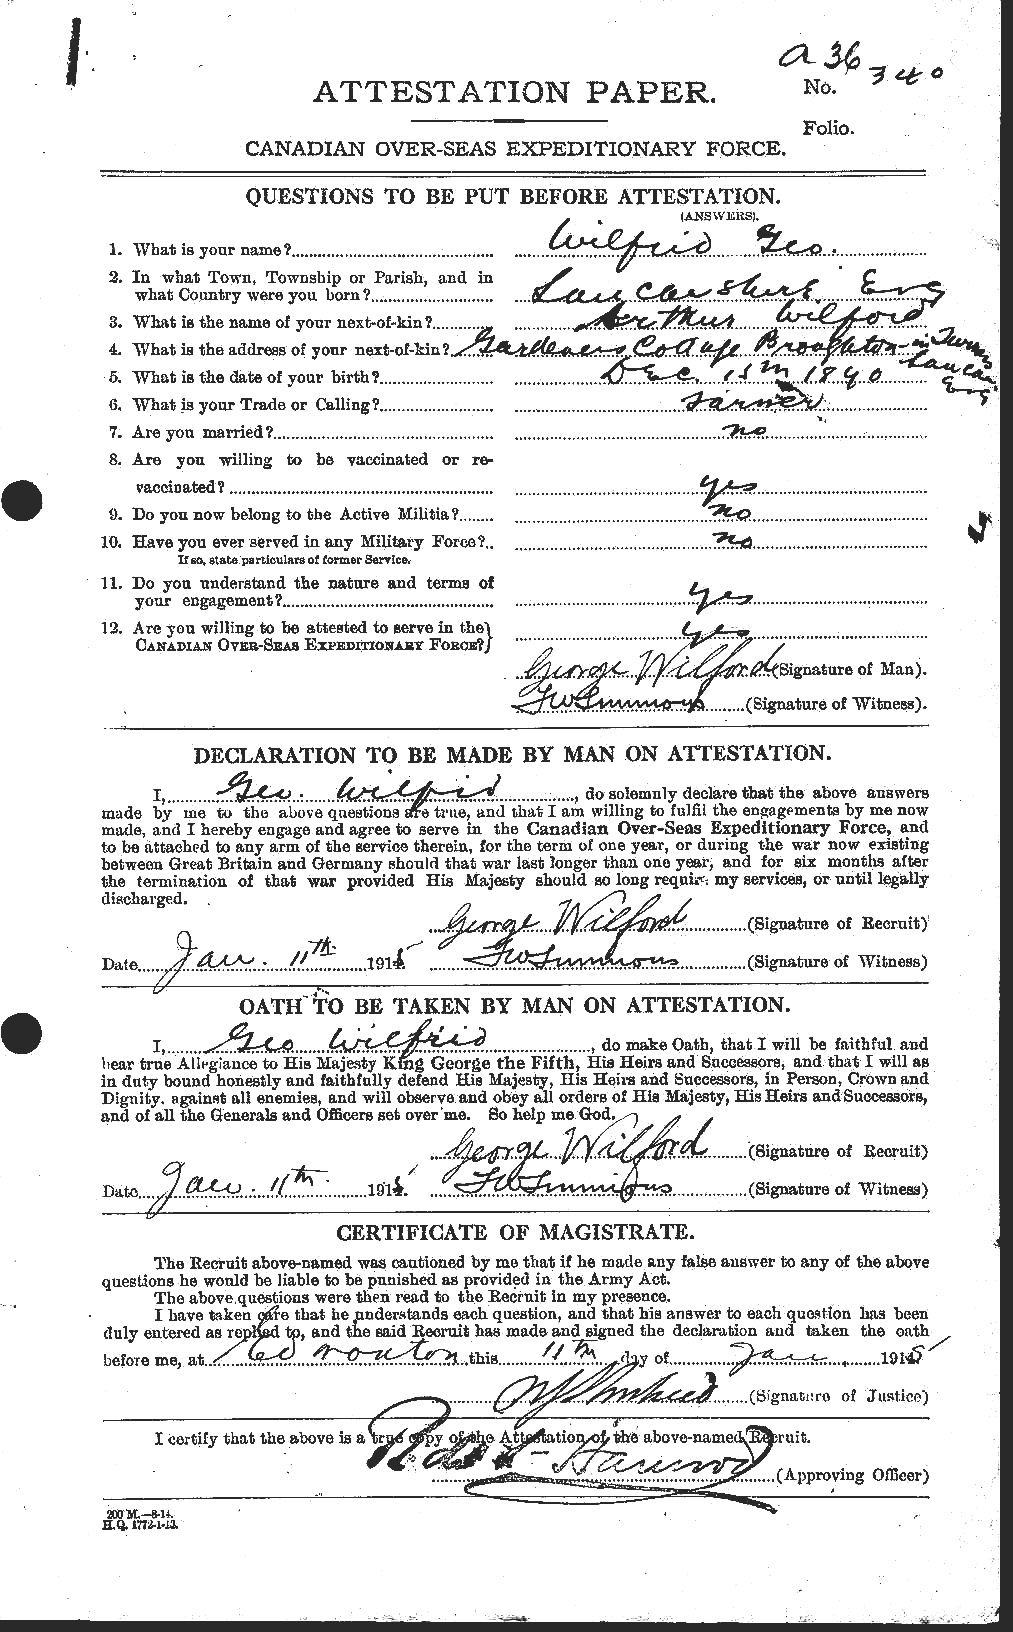 Dossiers du Personnel de la Première Guerre mondiale - CEC 680280a